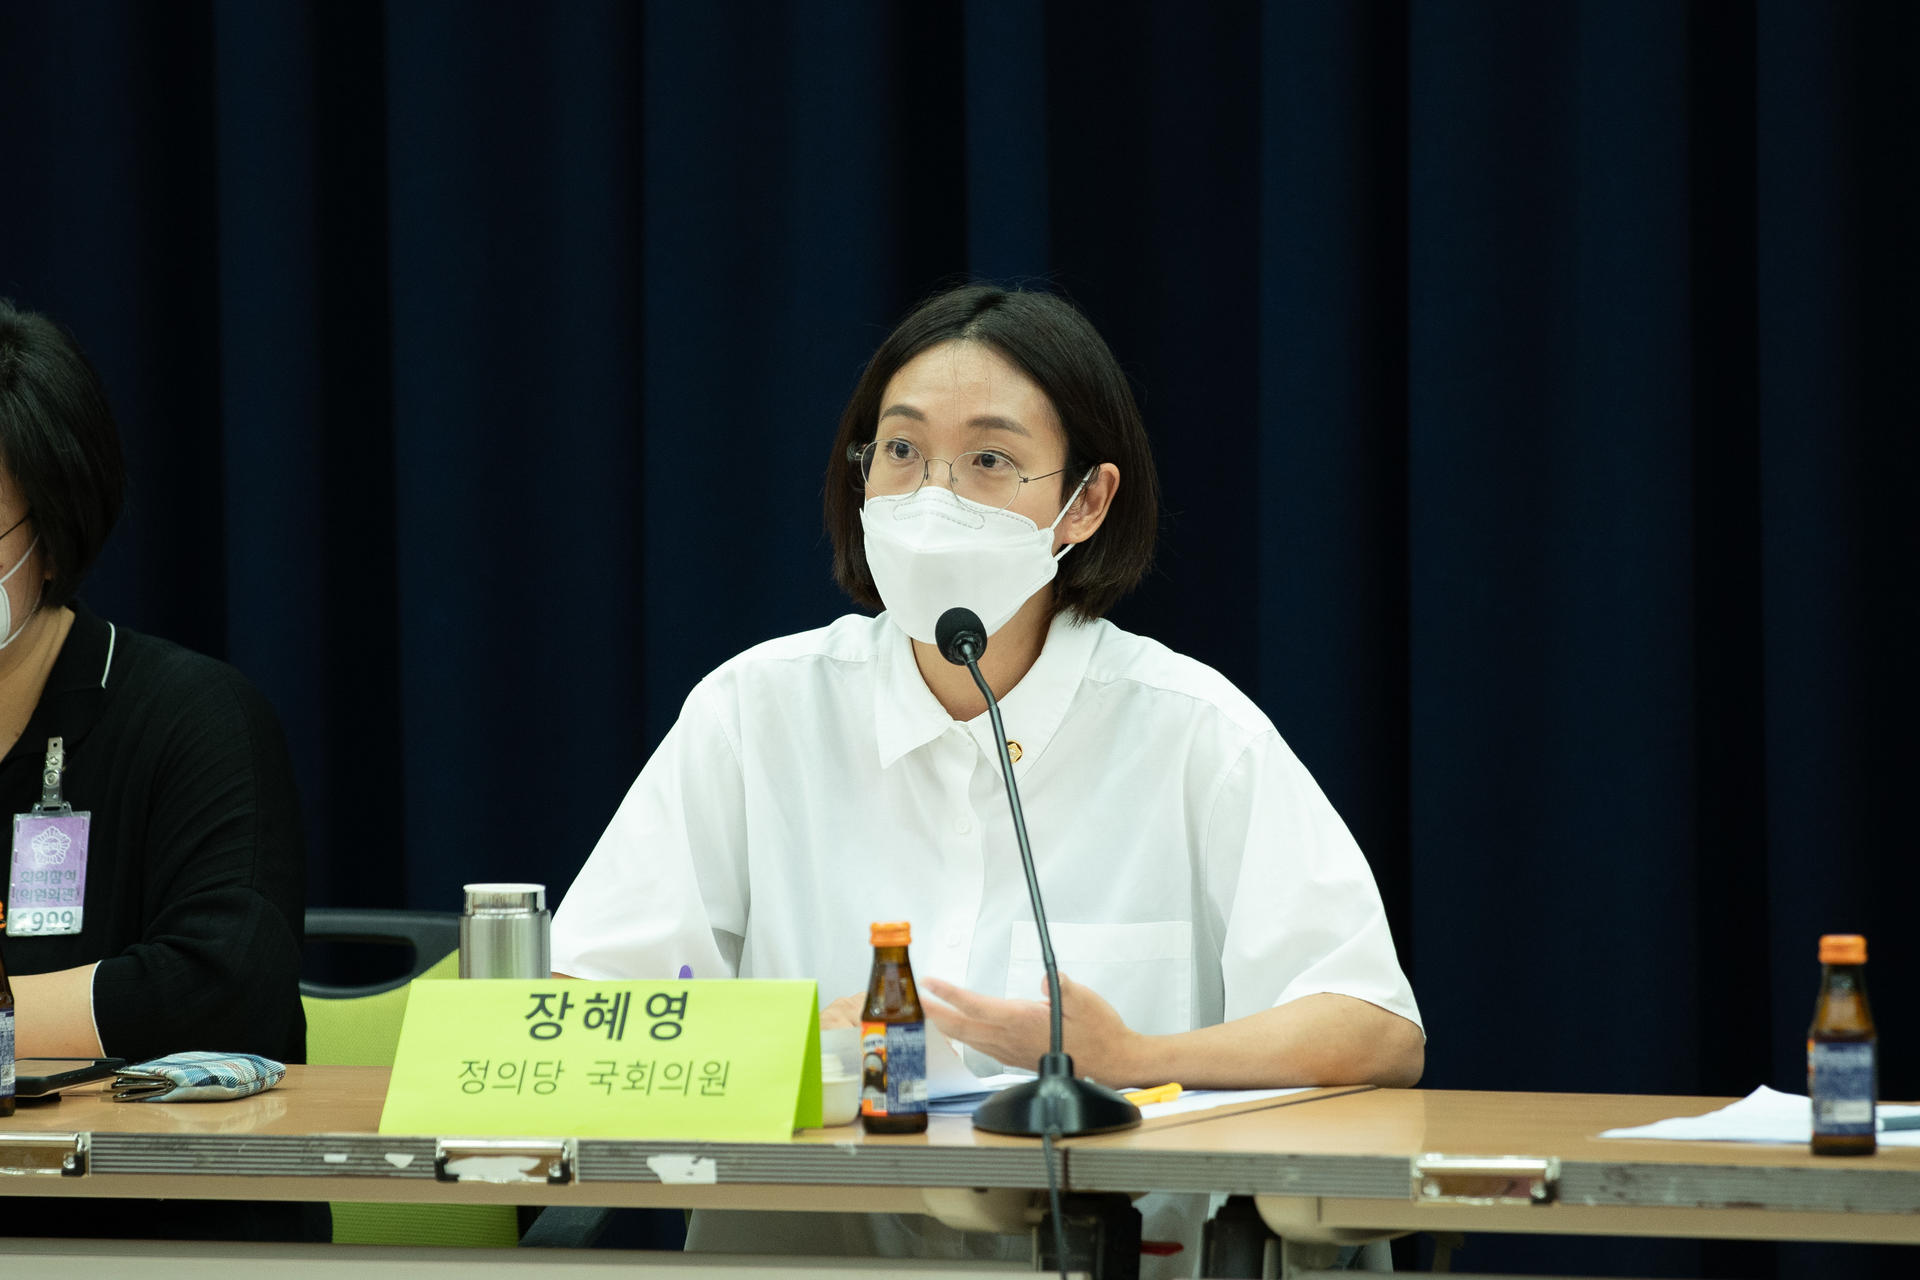 녹색당 혁신위원회에서 주최한 민주화 세대 이후의 정치 현장에서 토론하고 있는 장혜영 의원의 사진입니다.